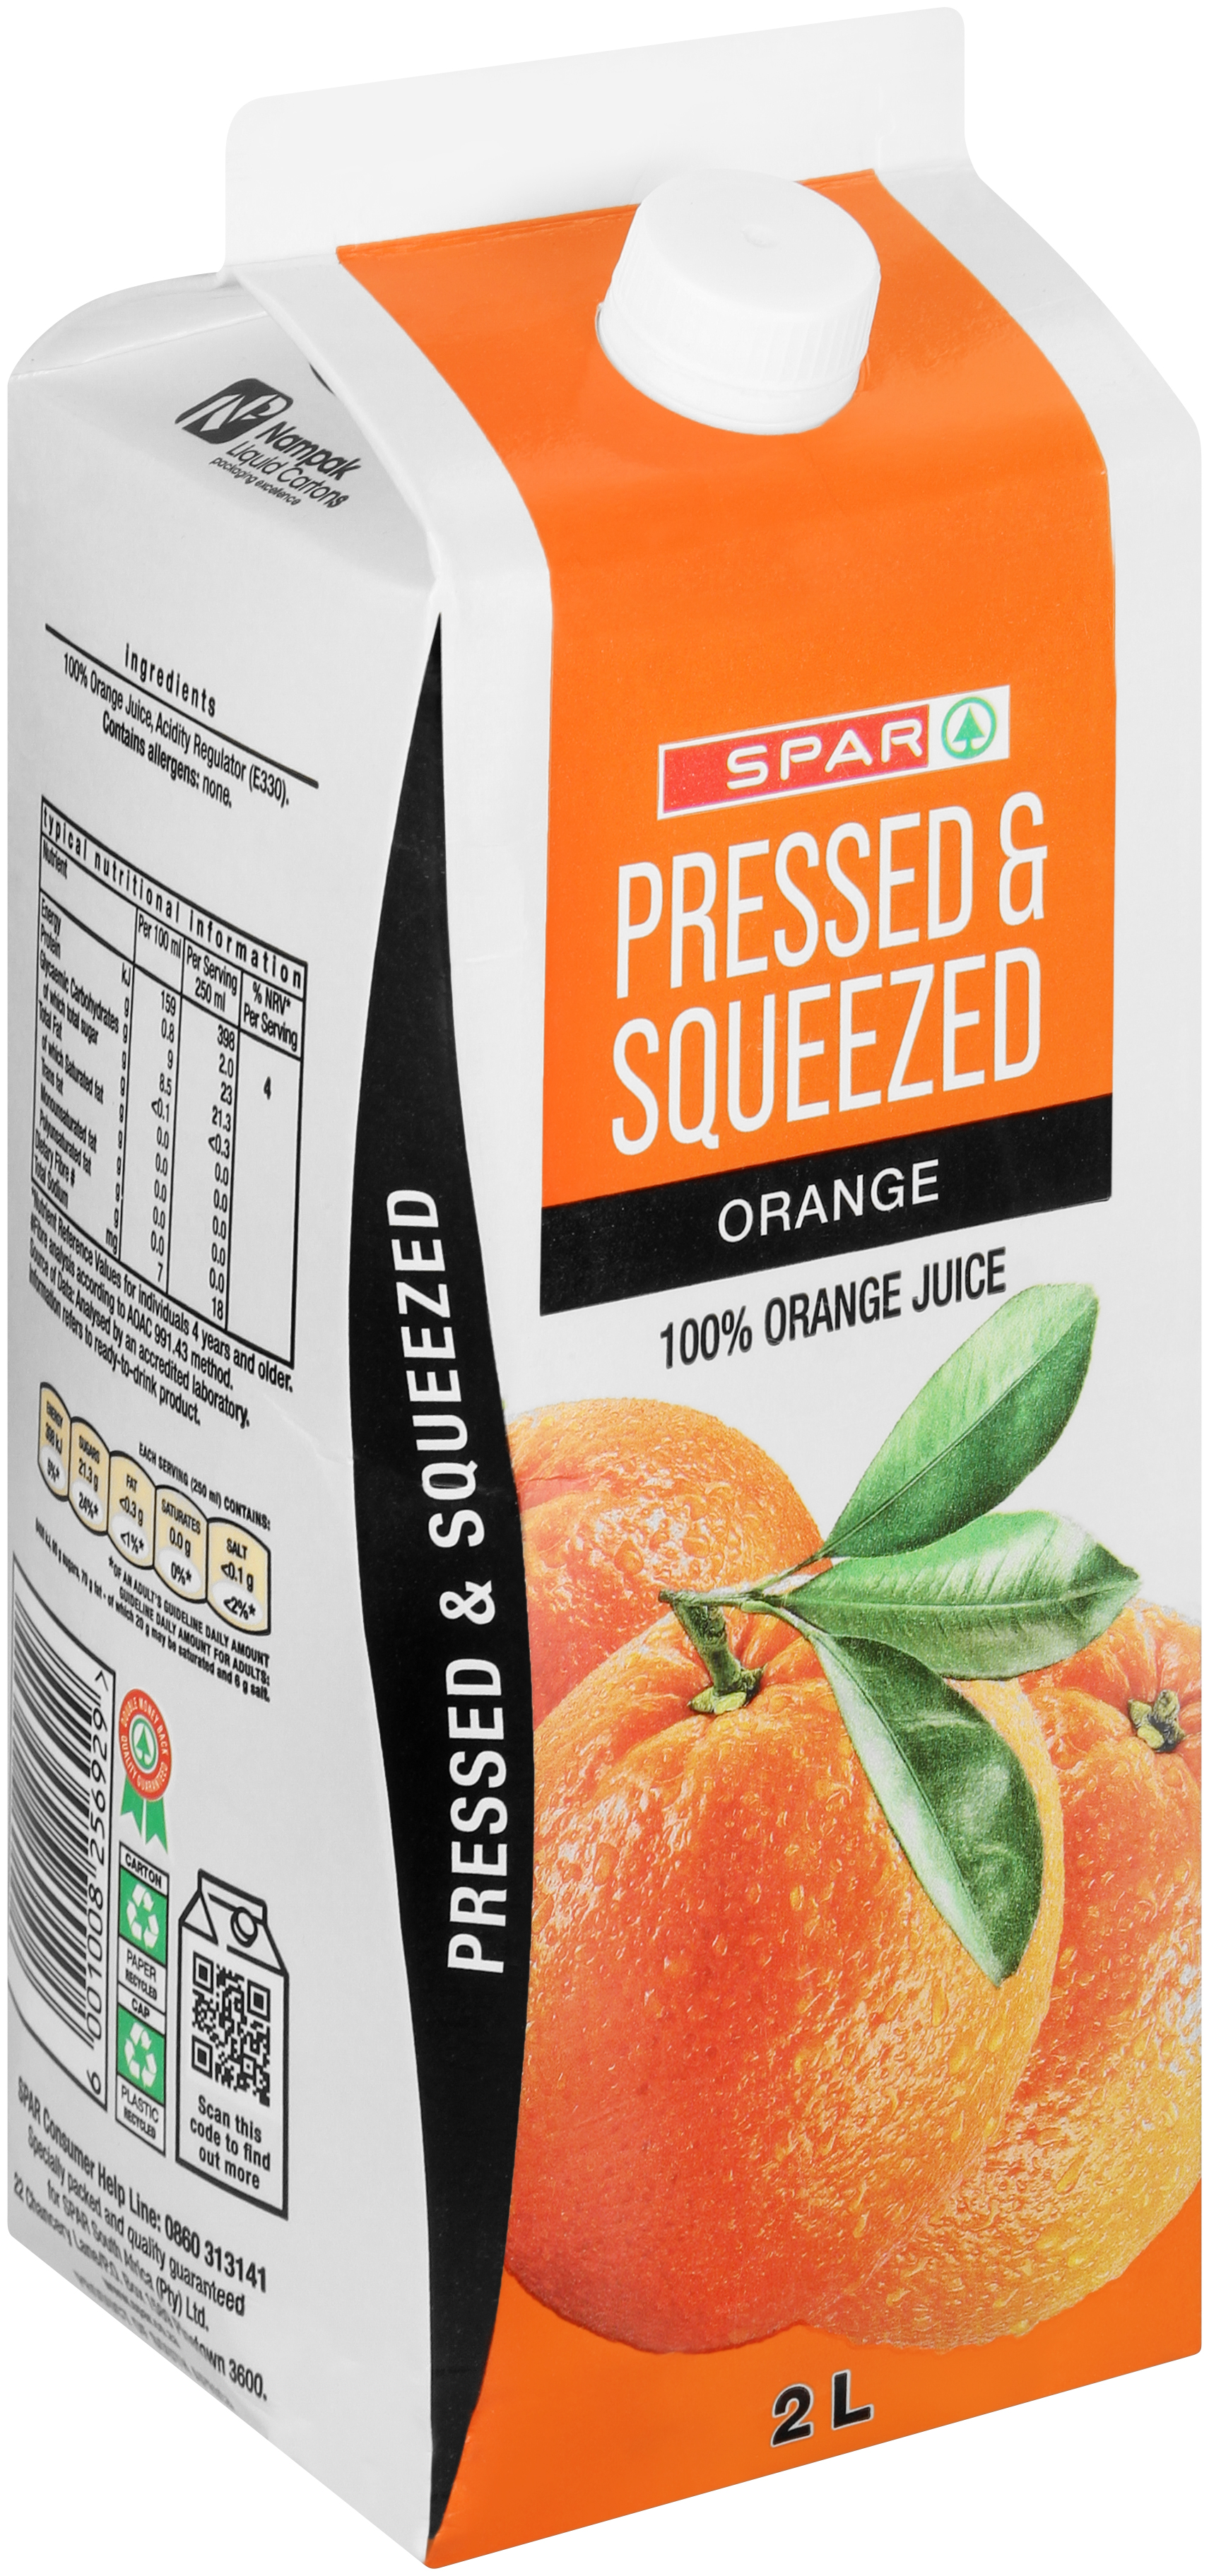 100% fruit juice - orange 